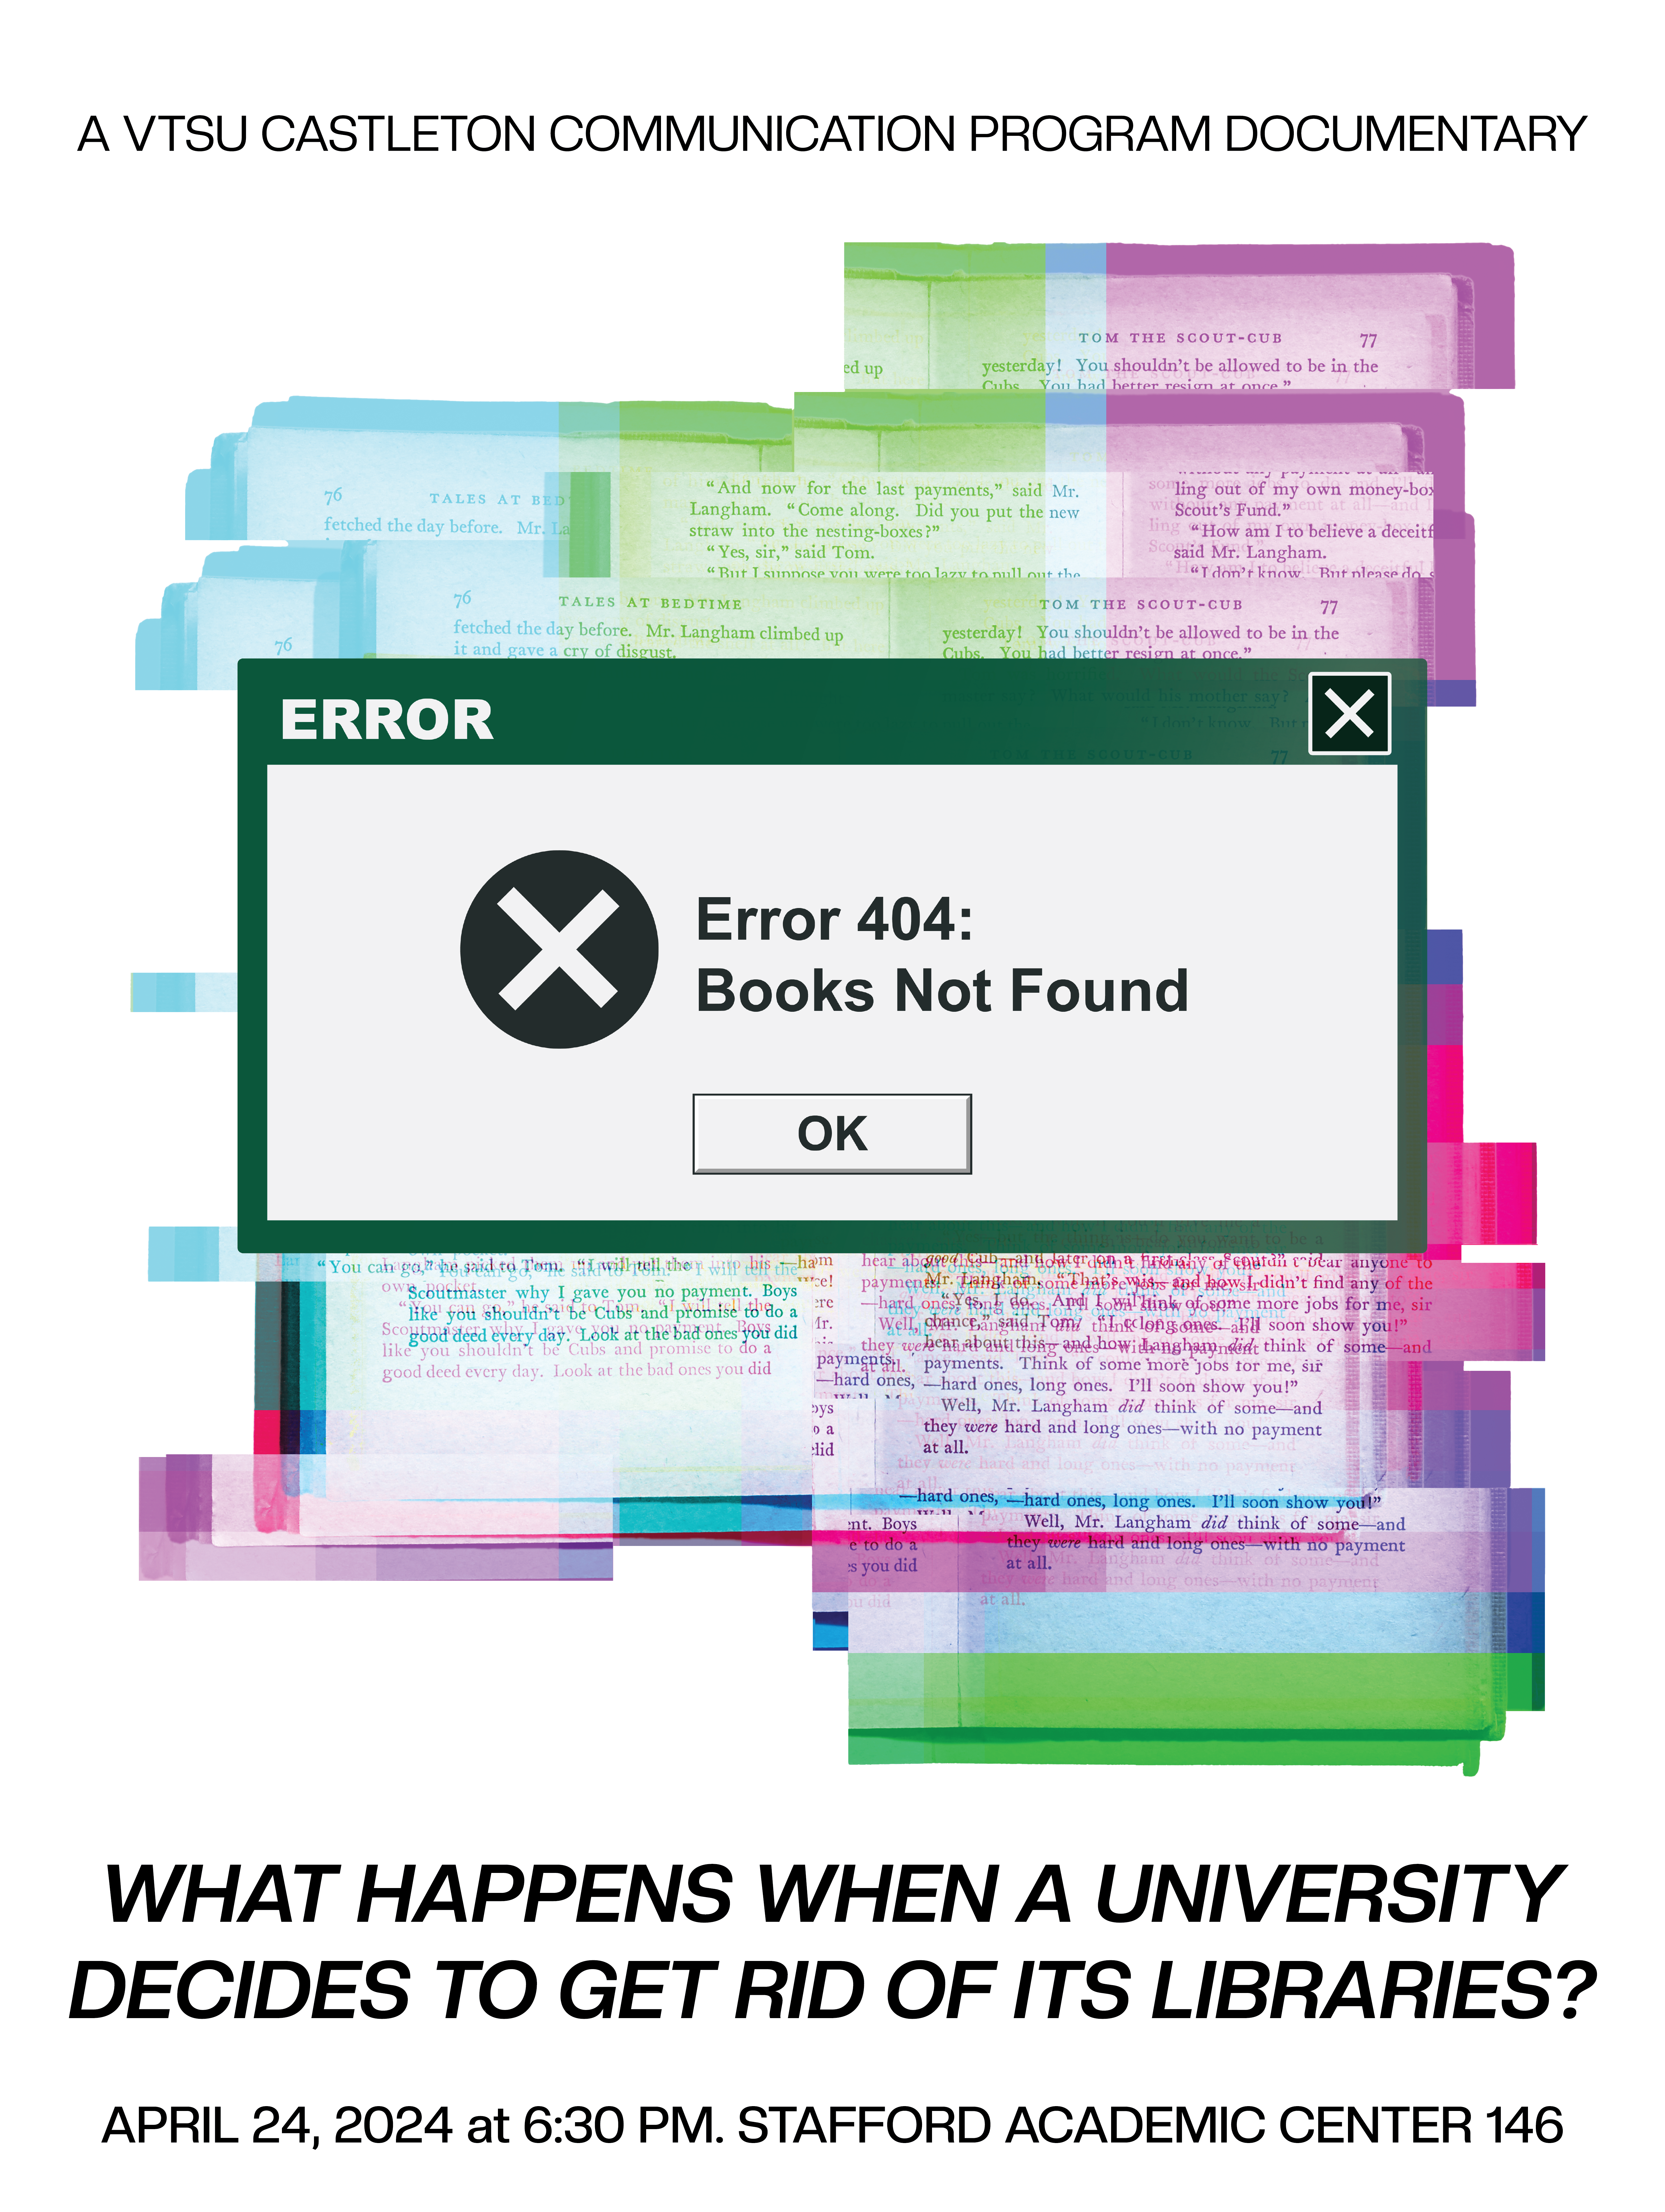 Error 404: Books Not Found